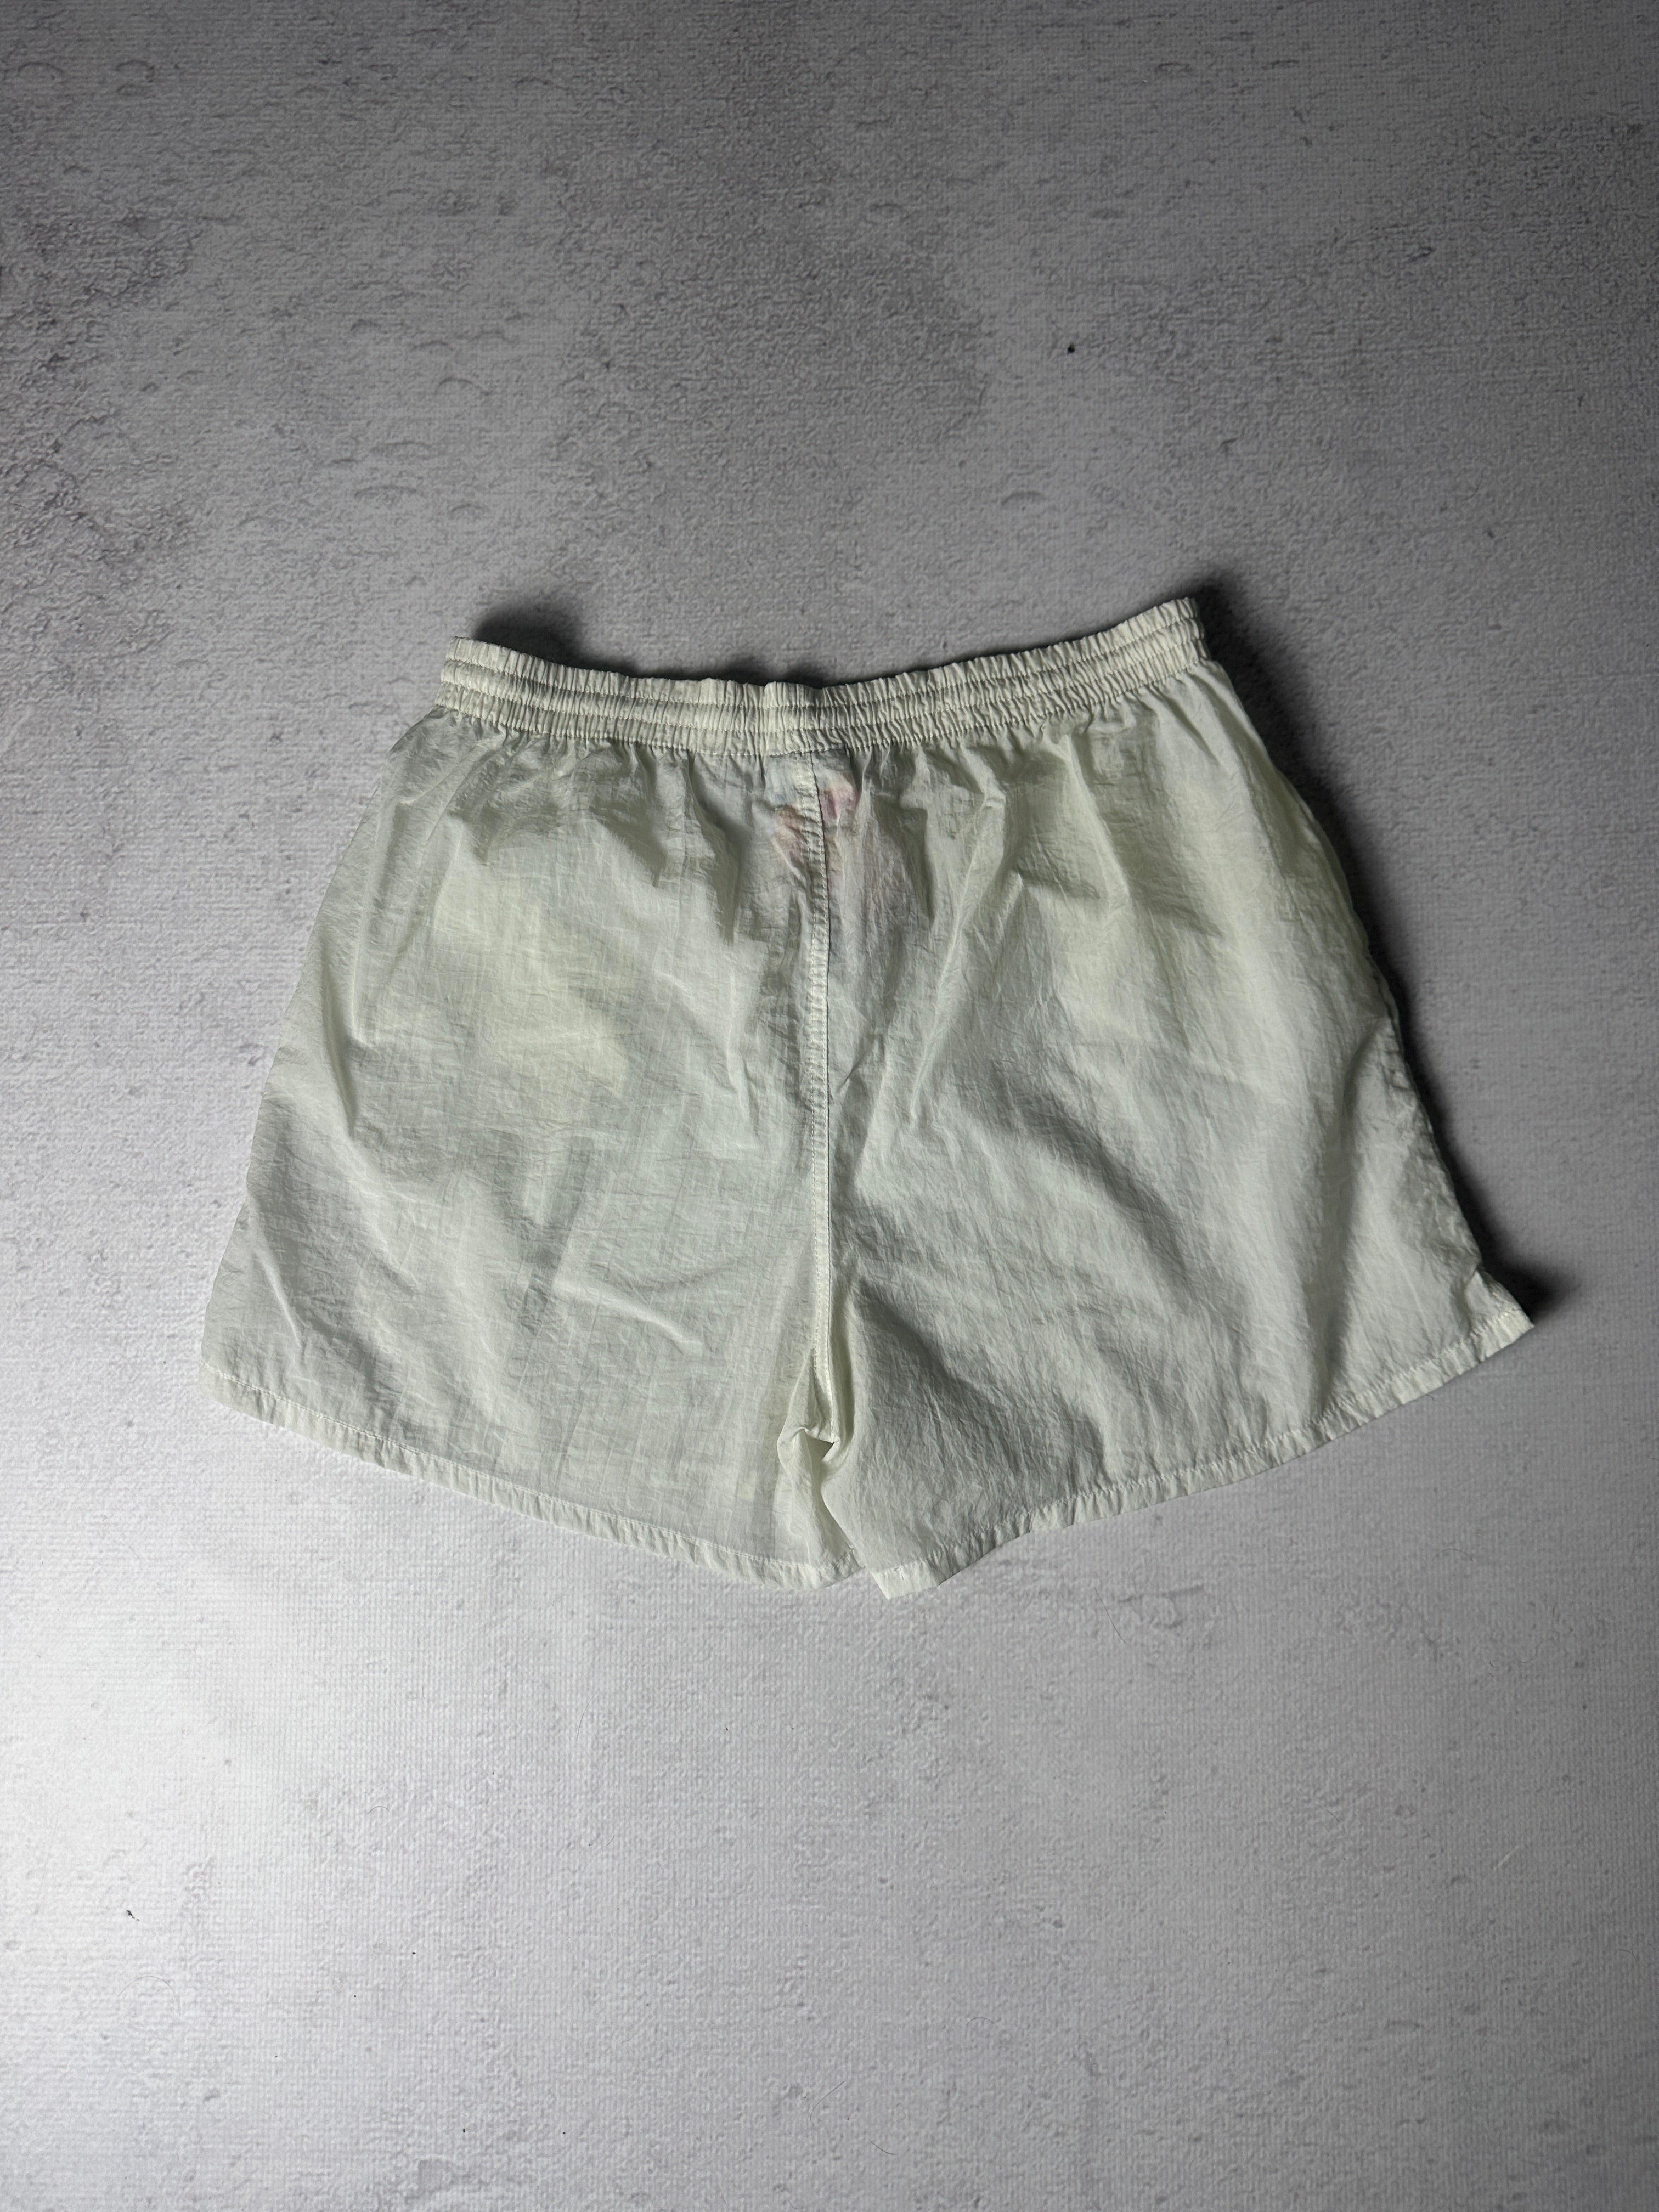 Vintage Reebok Track Shorts - Men's XL